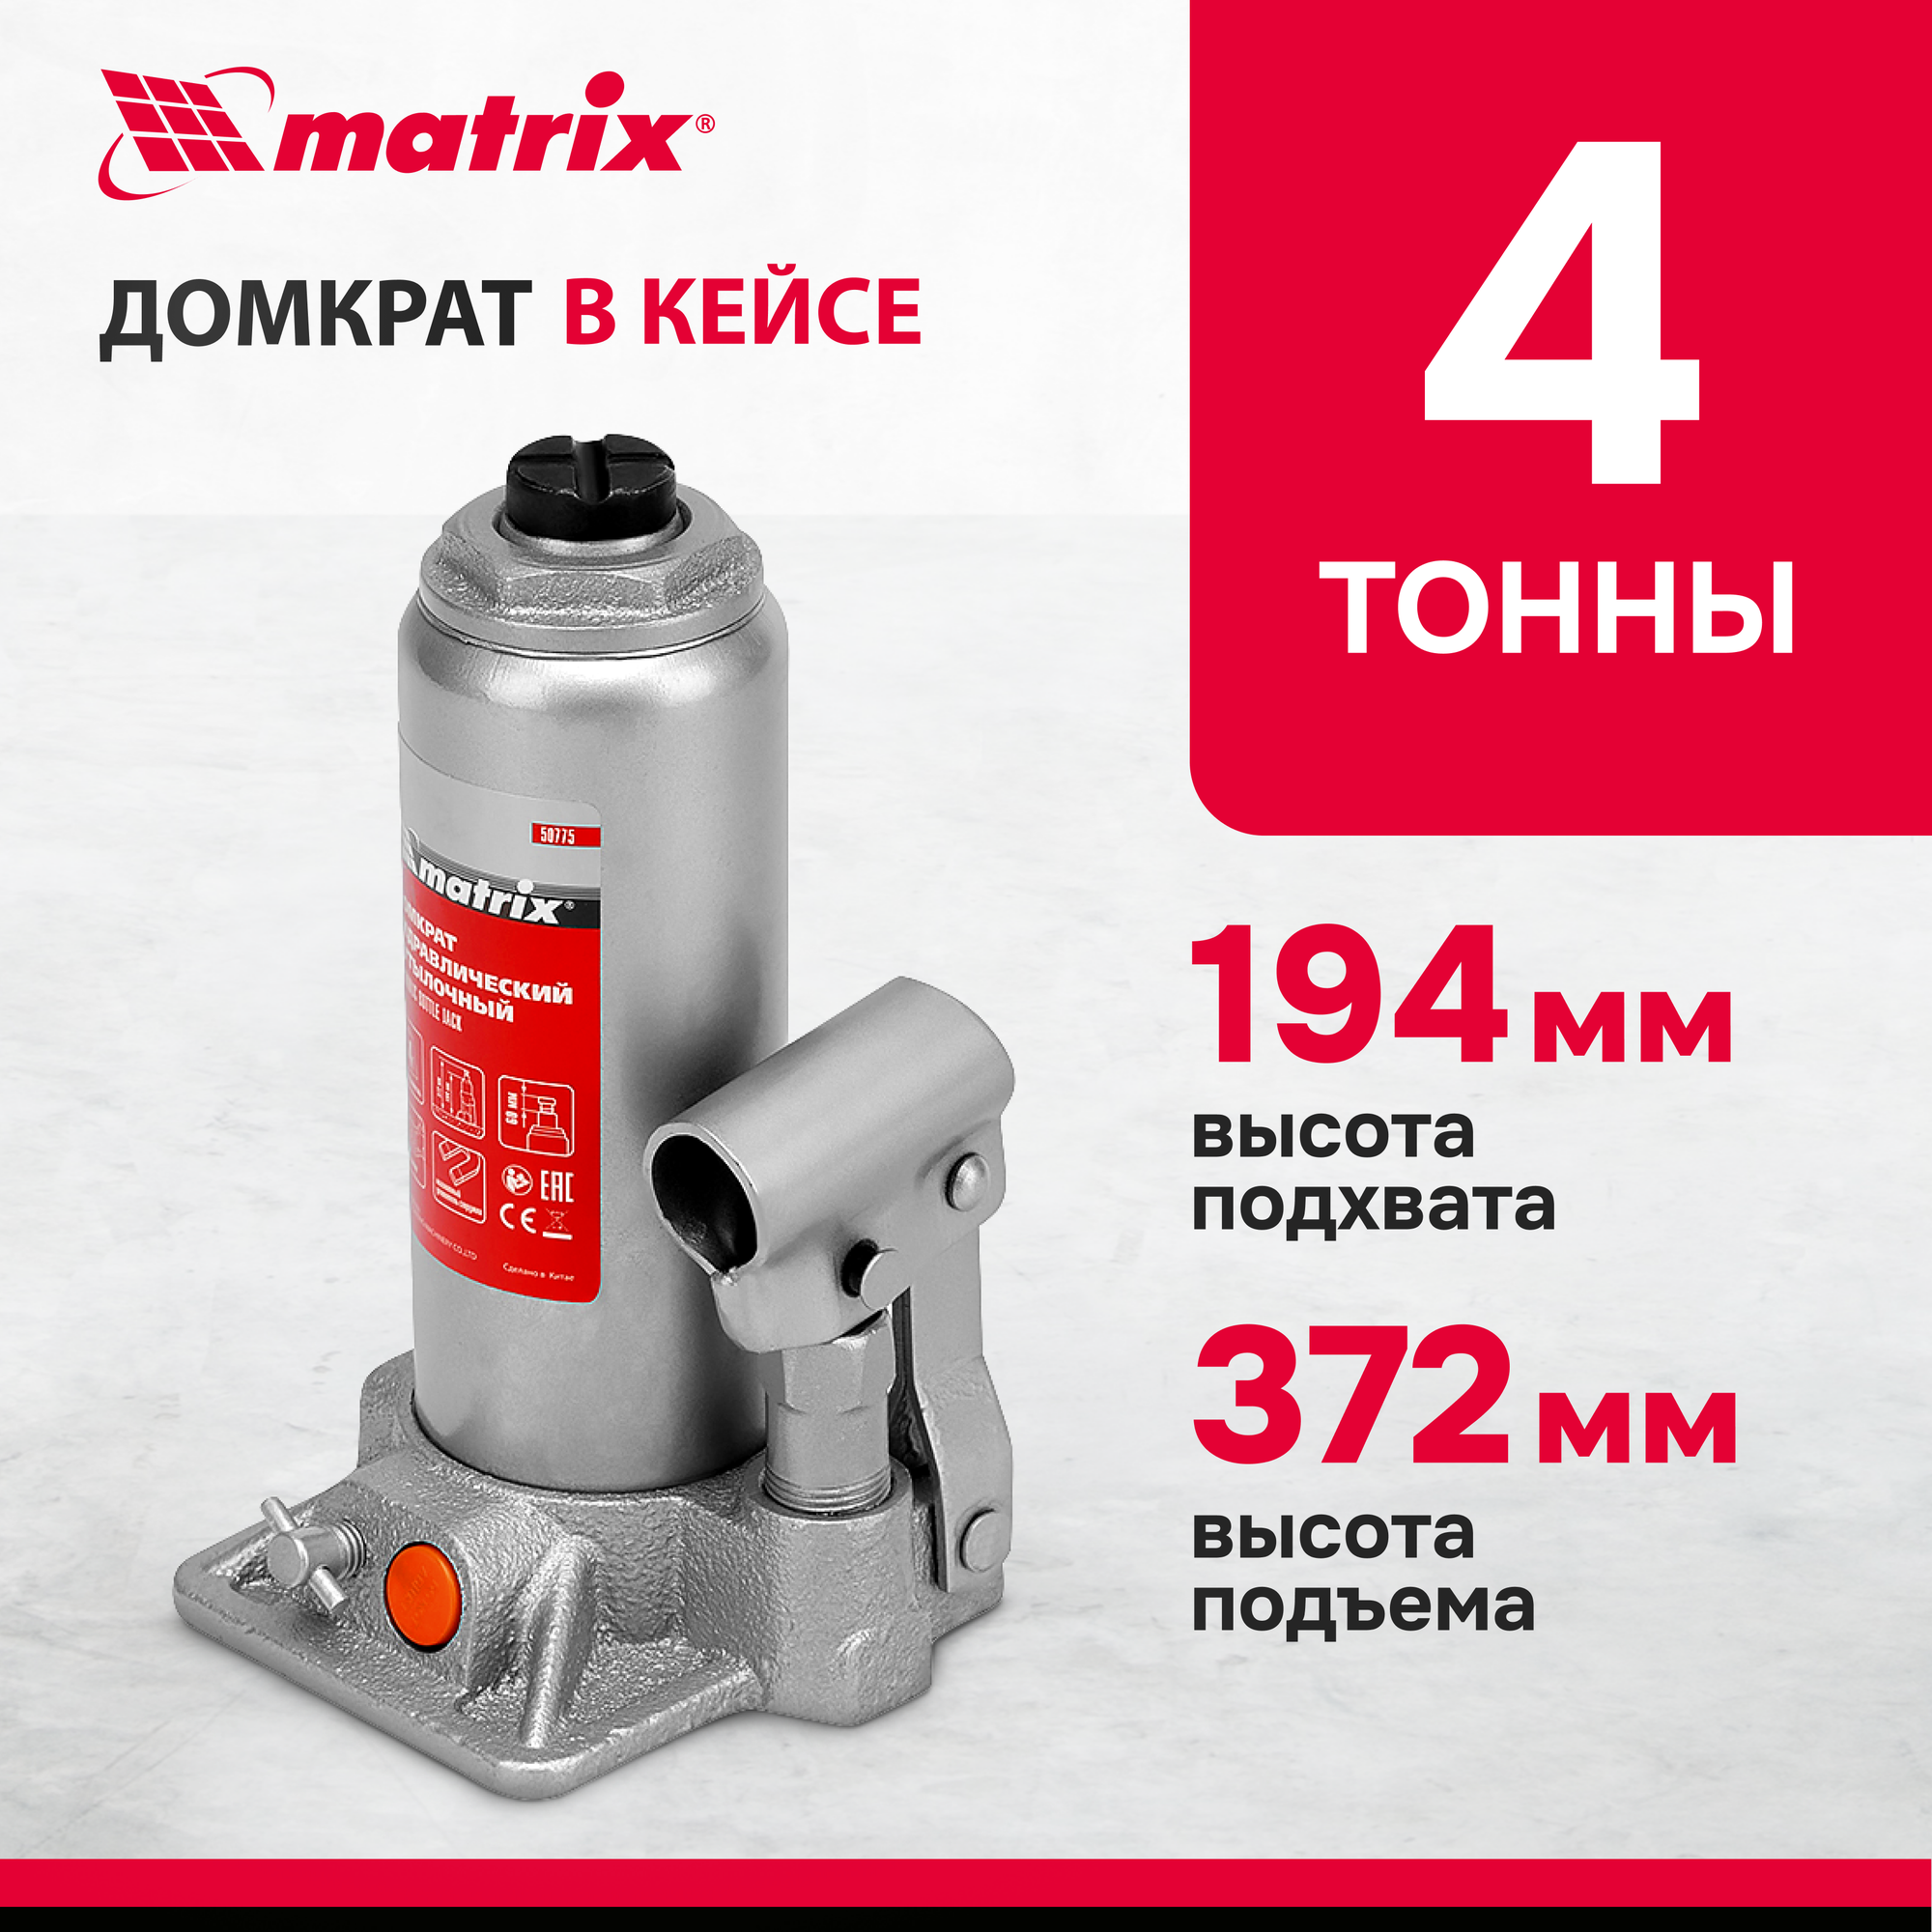 Домкрат бутылочный гидравлический matrix 50775 (4 т)